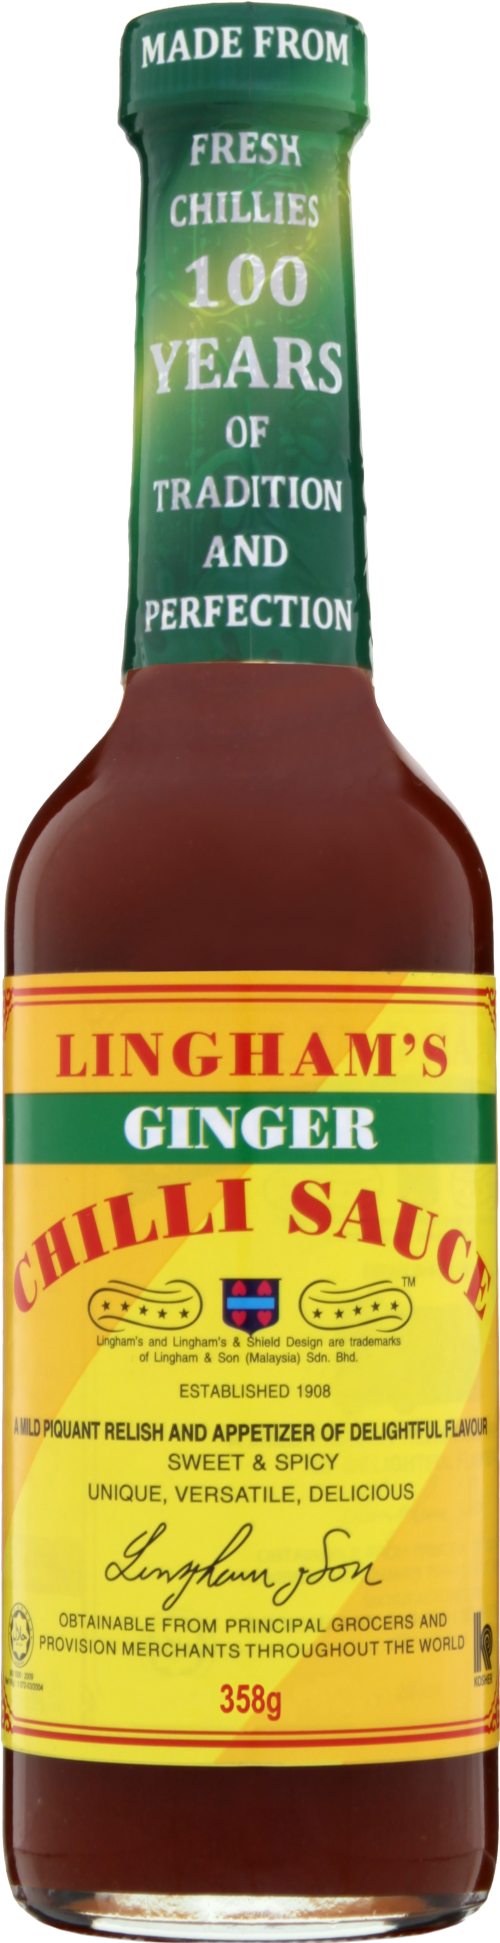 LINGHAM'S Ginger Chilli Sauce 358g